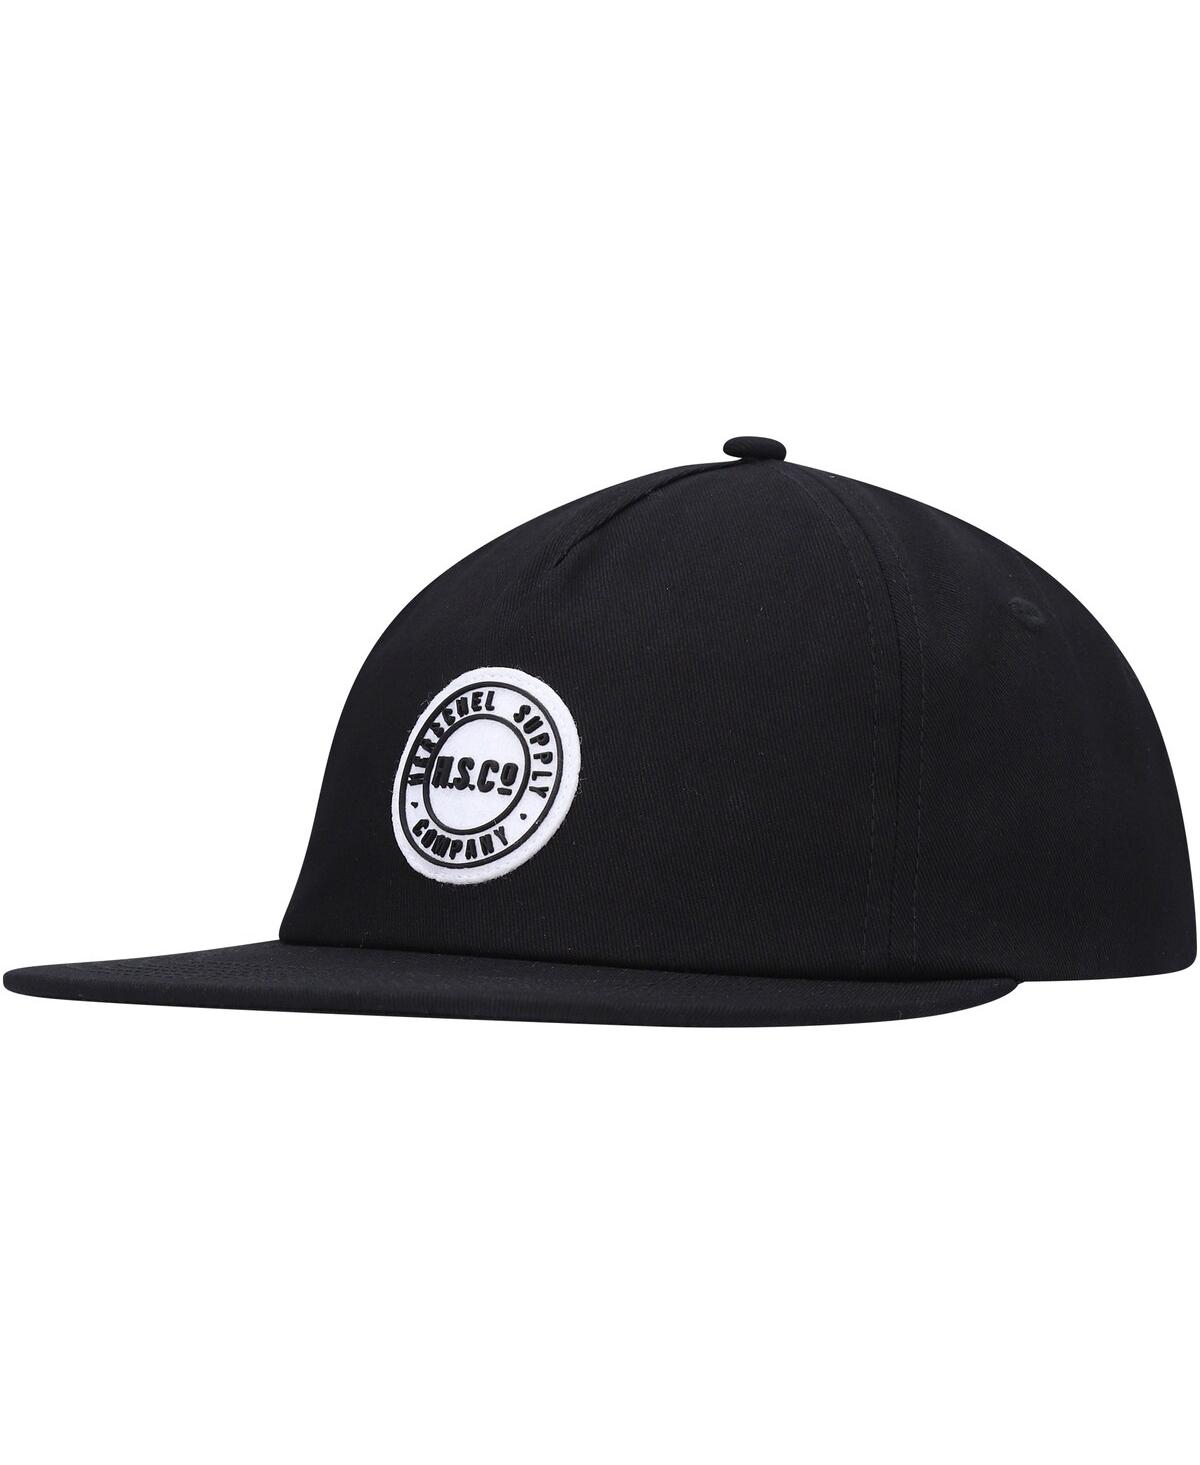 Herschel Men's  Supply Co. Black Scout Adjustable Hat